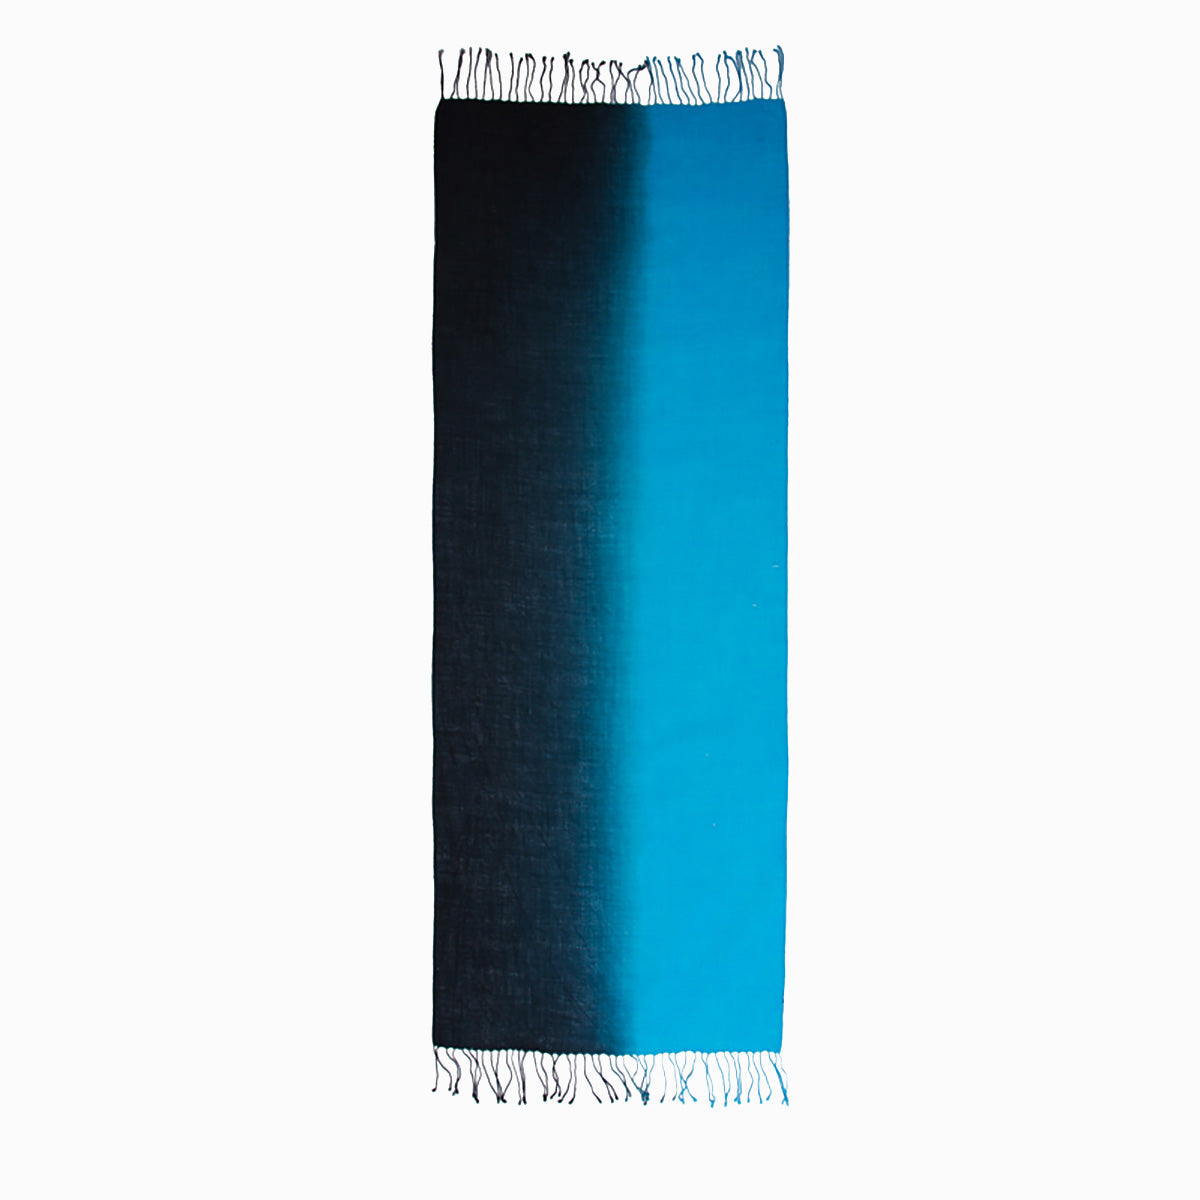 Ugg 100% Merino Wool Tie Dye Scarf Black and Cyan Blue-Scarves-PEROZ Accessories